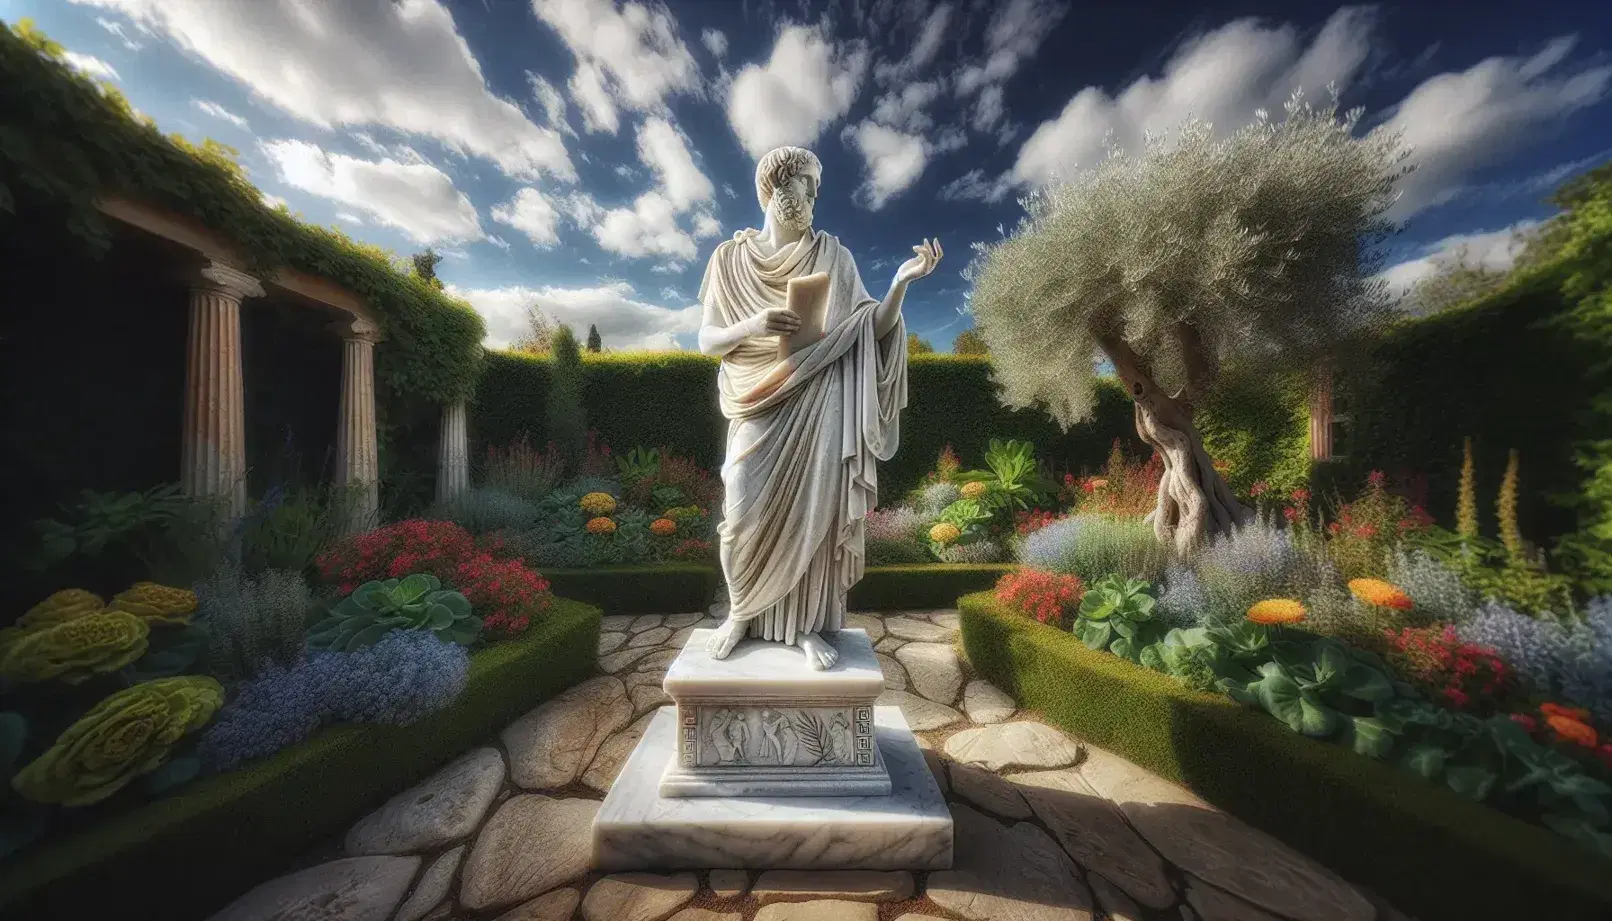 Escultura de mármol blanco de filósofo presocrático en jardín, con túnica y papiro, rodeado de plantas verdes y flores coloridas bajo cielo azul.